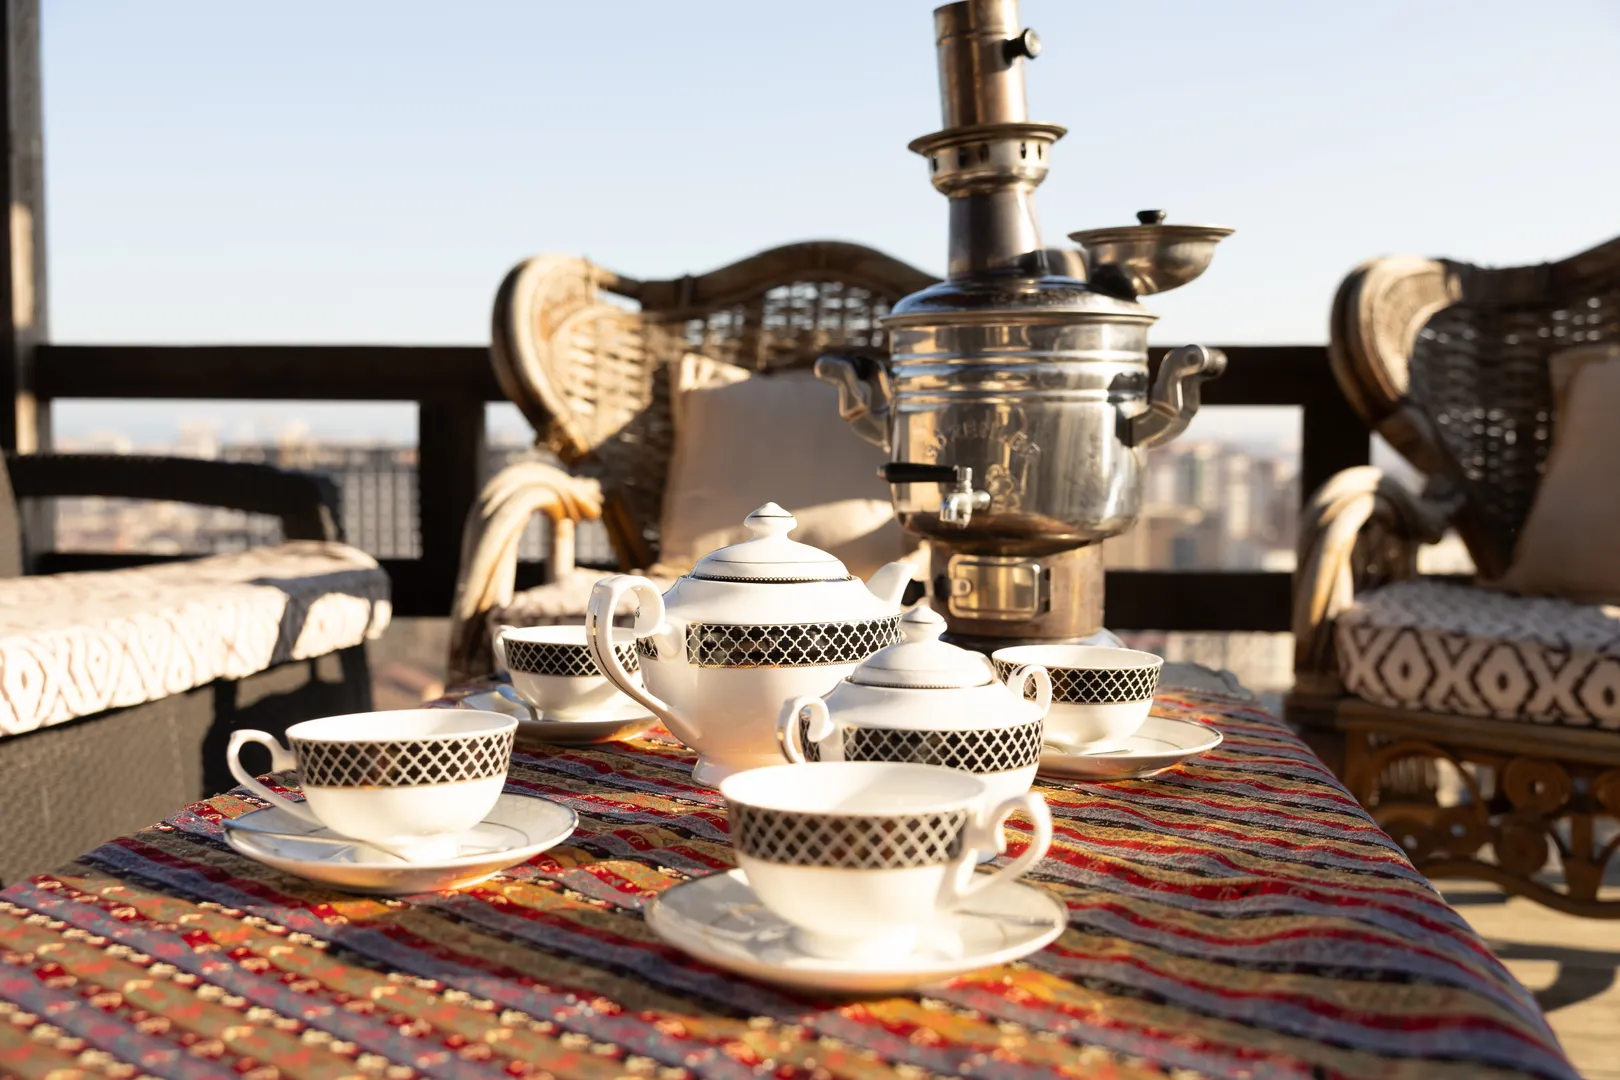 А это мы отдыхаем во дворе в нашей беседке с видом на город Махачкалу и пьём чай из самовара. И такой чайный сервиз мы вам предоставим